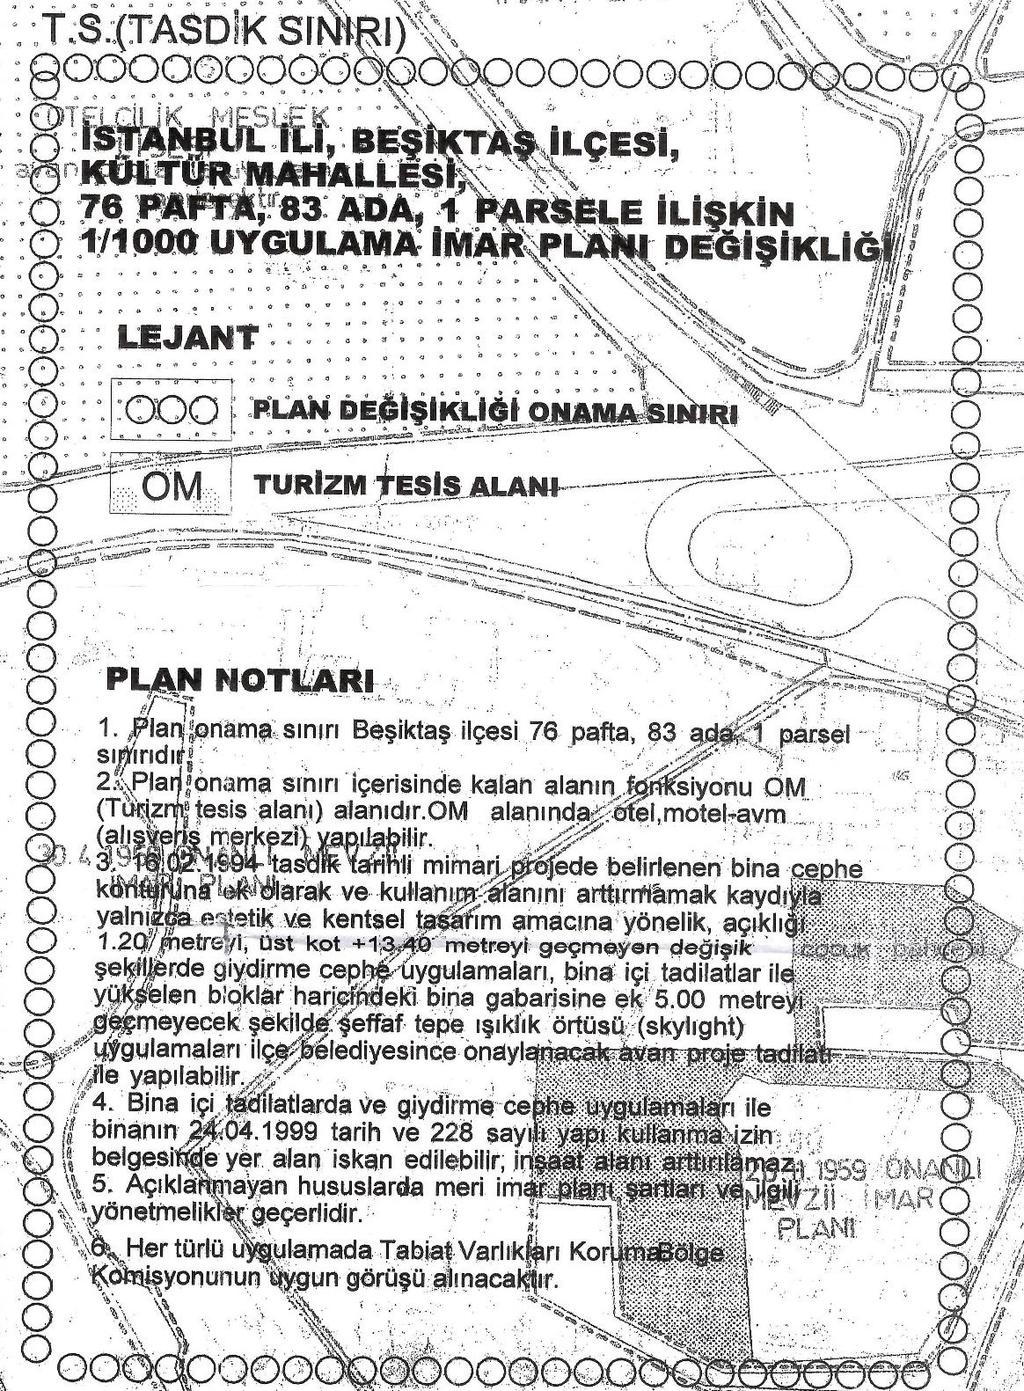 Plan Notları: Plan onama sınırı Beşiktaş ilçesi, 76 pafta, 83 ada, 1 parsel sınırıdır. Plan onama sınırı içerisinde kalan alanın fonksiyonu OM (Turizm tesis alanı) alanıdır.